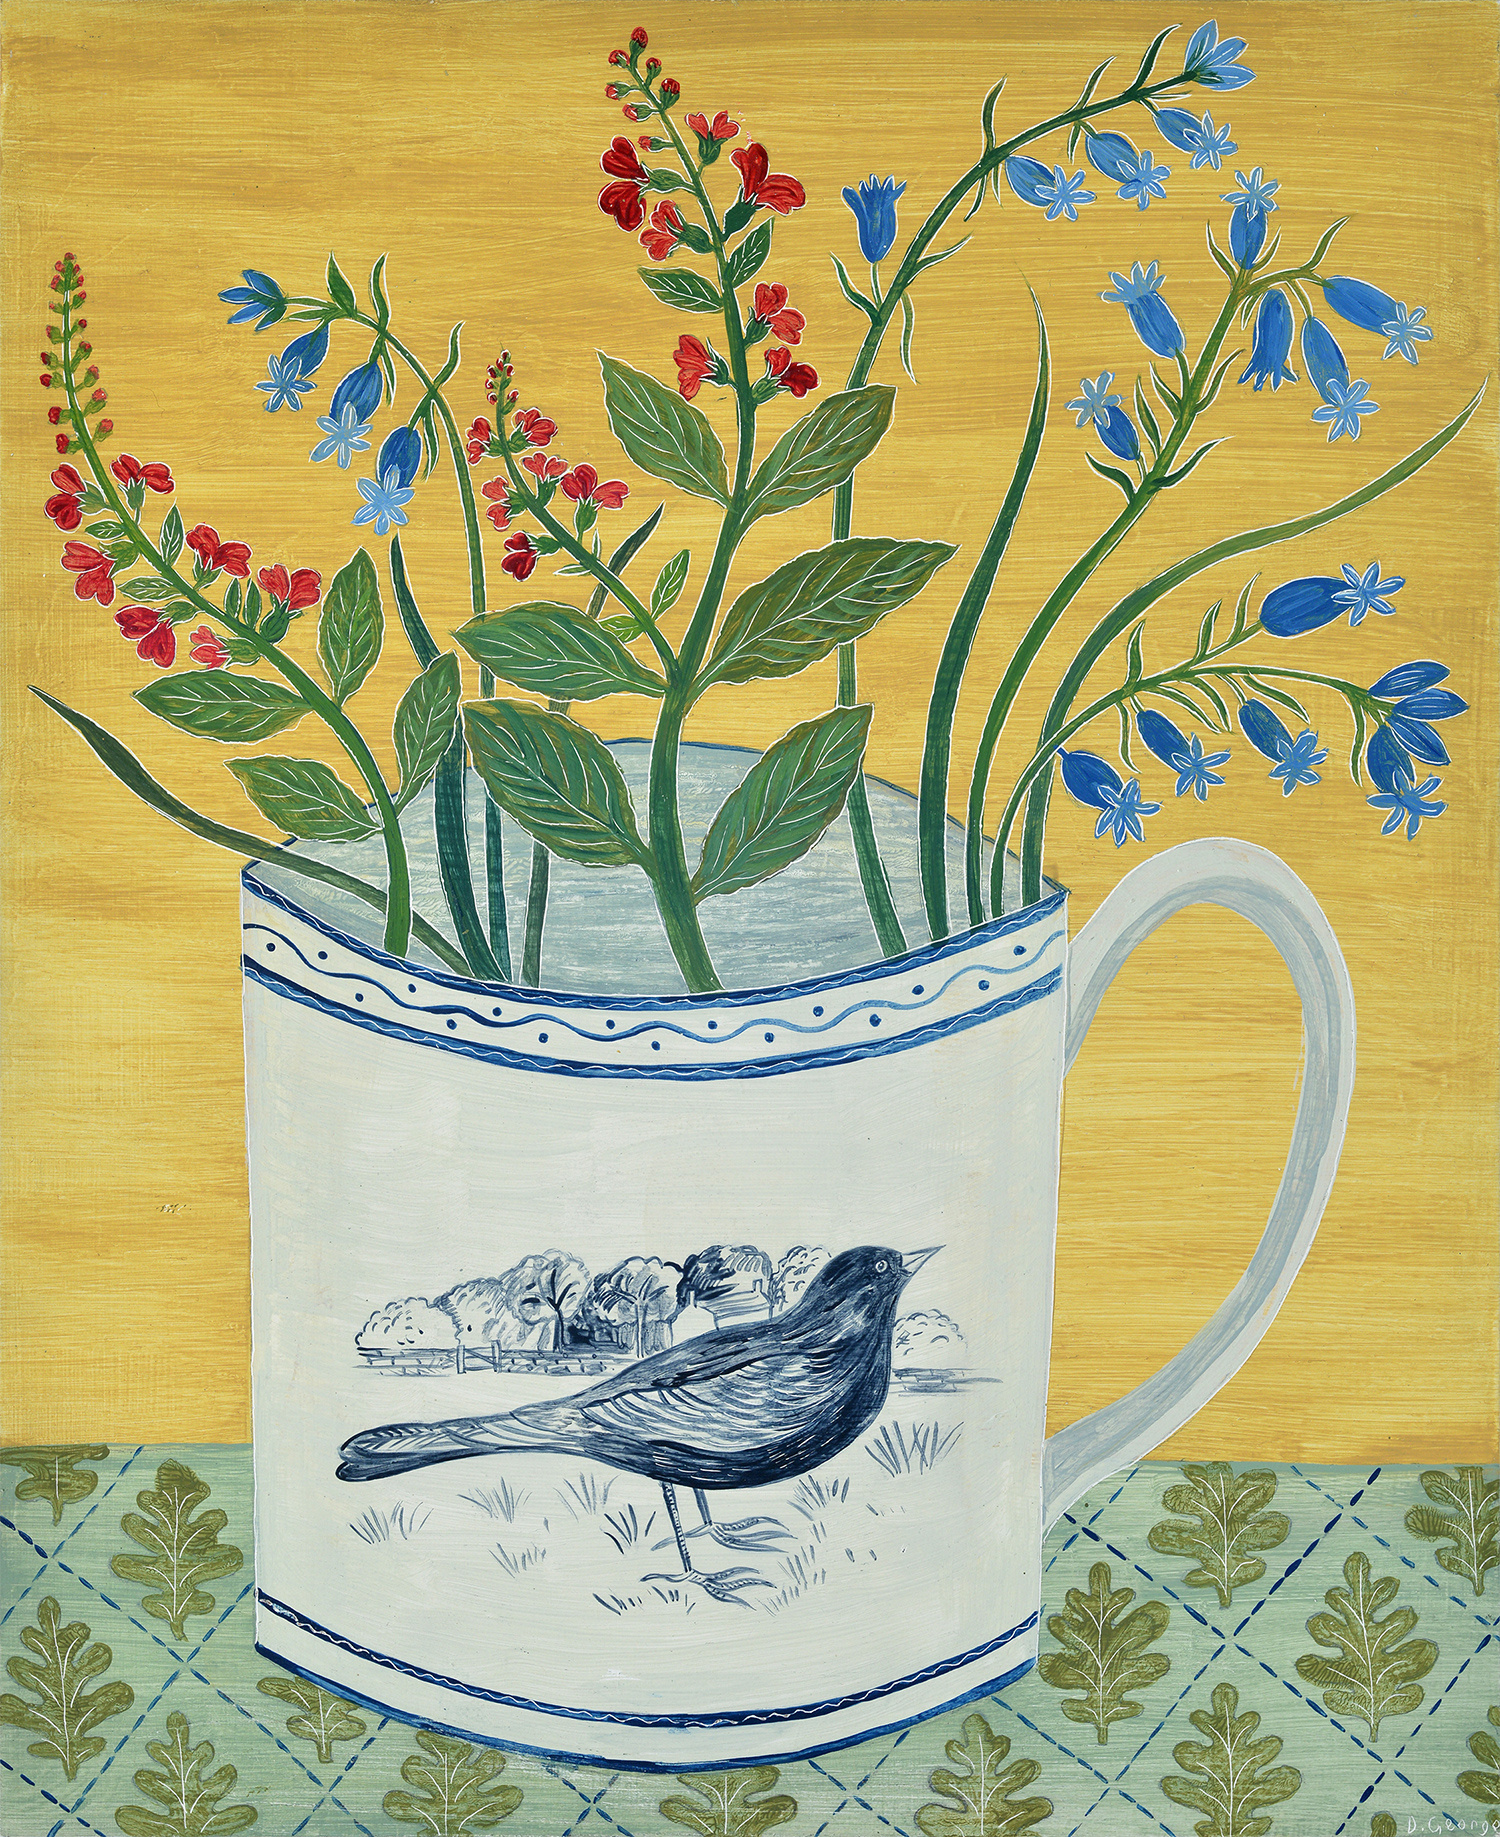 Blackbird Cup by Debbie George